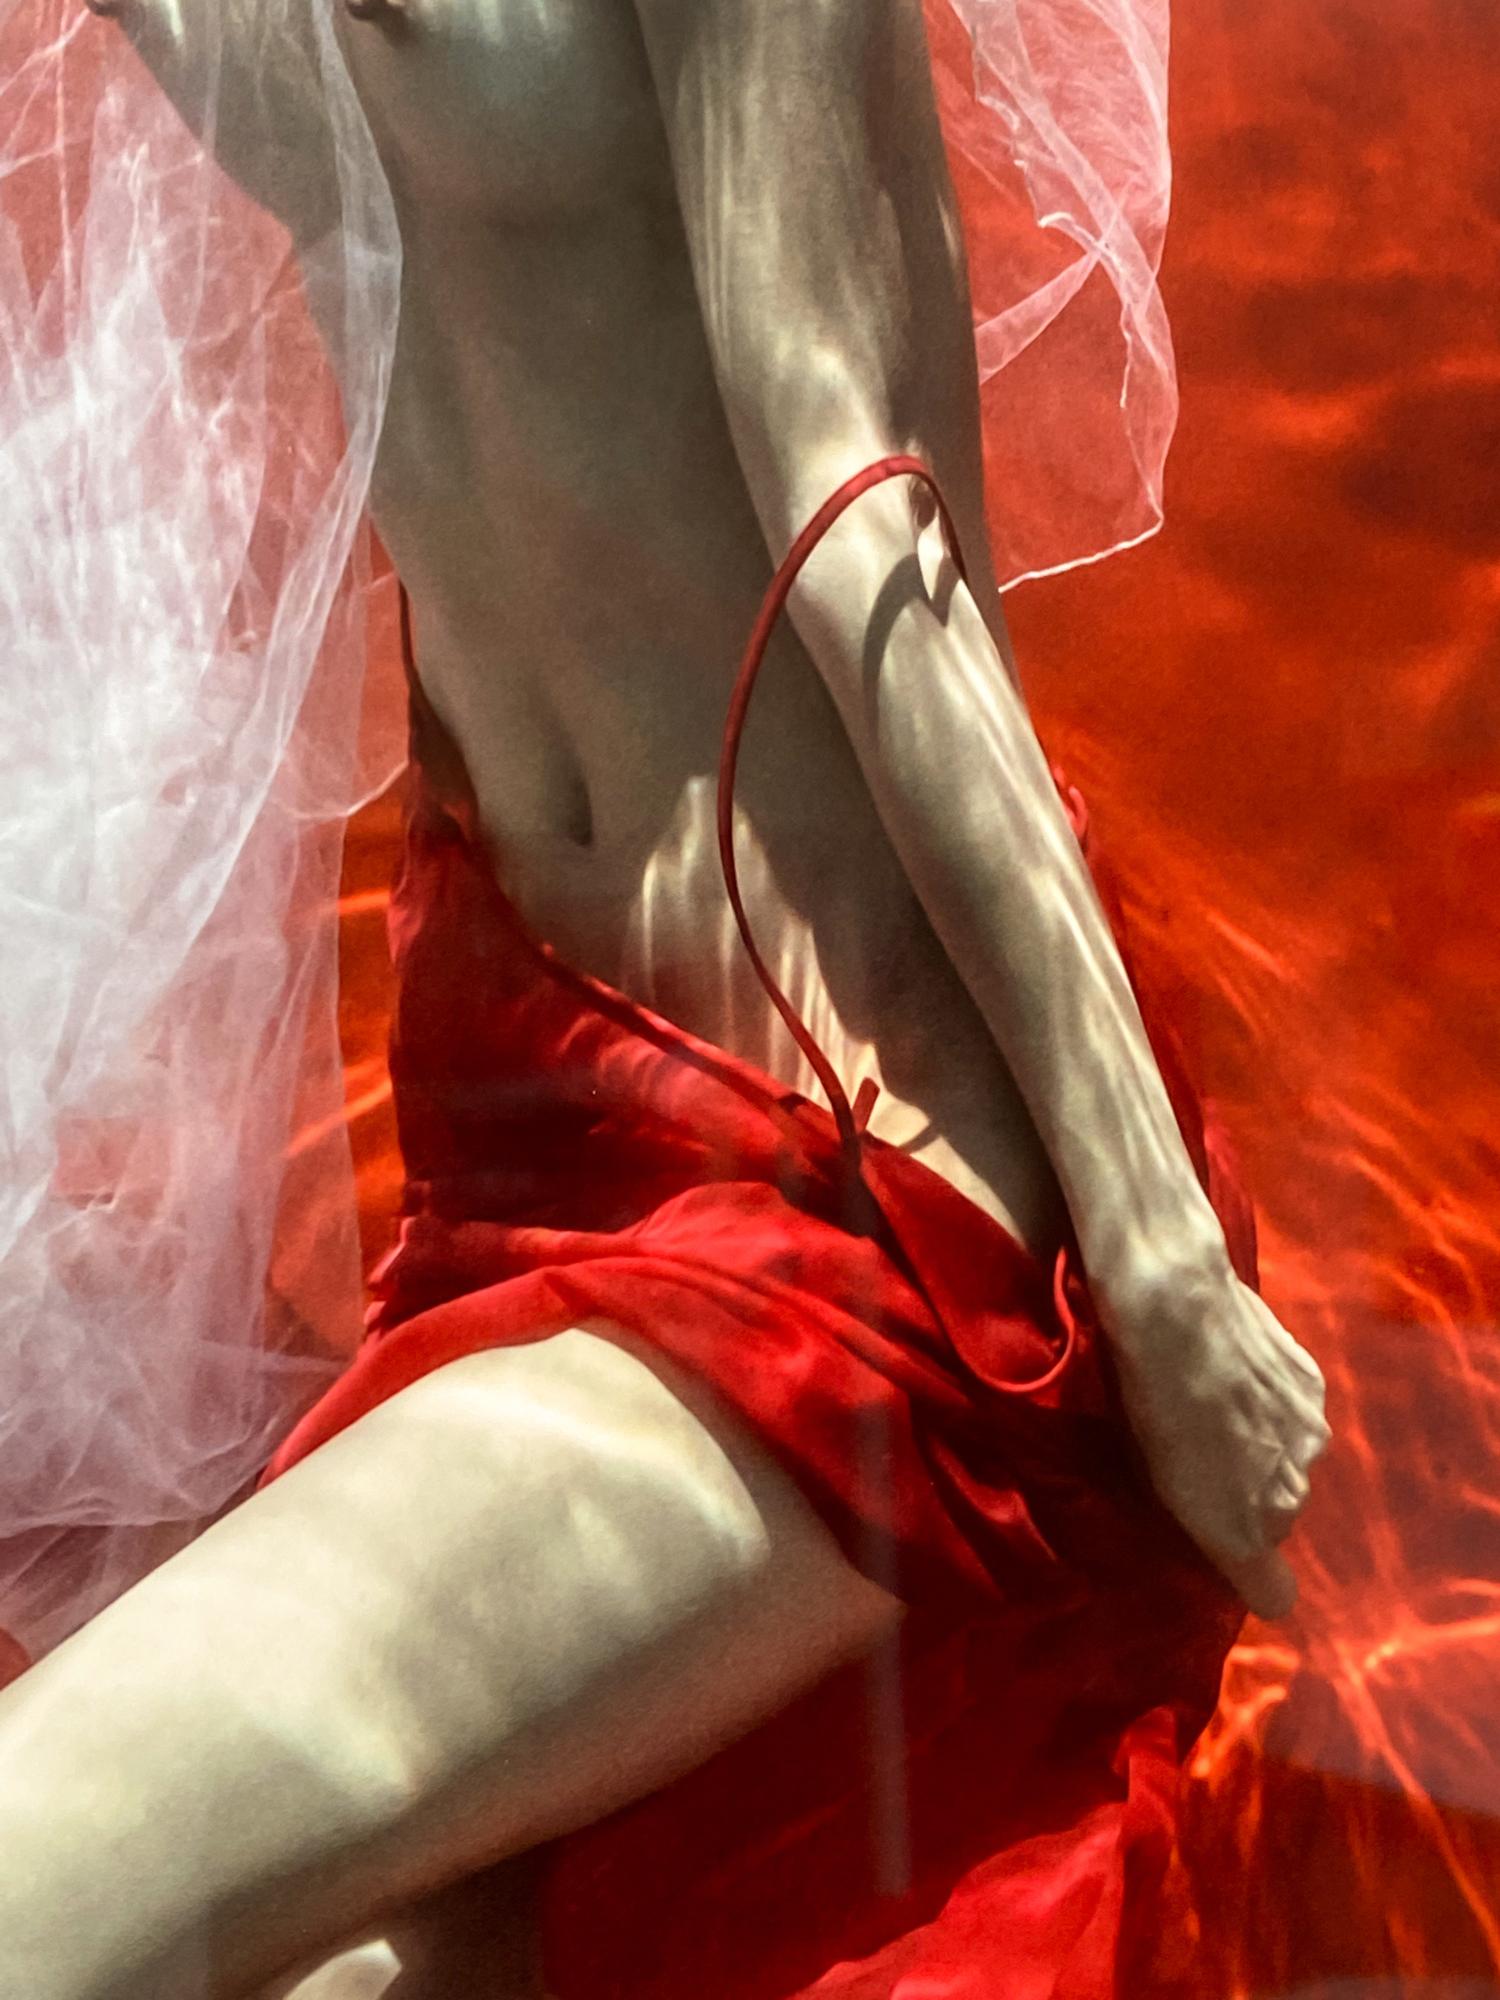 Ein Unterwasserfoto von einer jungen Frau mit weißem Tüllschal, die ihren roten Rock vor einem leuchtend roten Hintergrund auszieht. 

Original-Digitaldruck auf Aluminiumplatte, vom Künstler signiert.
Limitierte Auflage von 12 Stück, Druck Nr. 2
Das